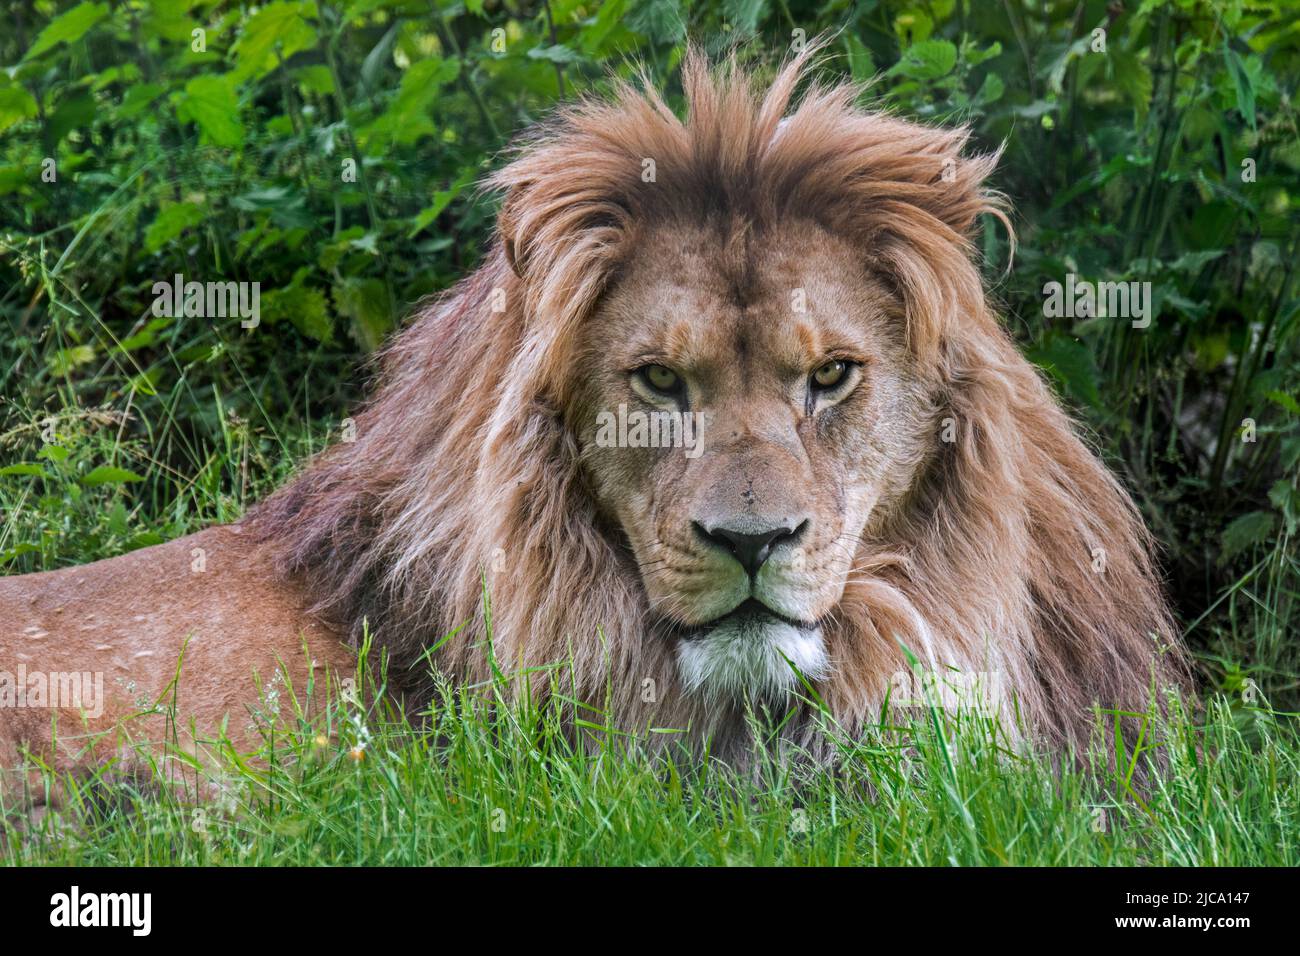 Lion de Barbarie / lion d'Afrique du Nord / lion de berbère / lion d'Atlas / lion d'Égypte (Panthera leo) Fierce look masculin dans le zoo, éteint dans la nature Banque D'Images